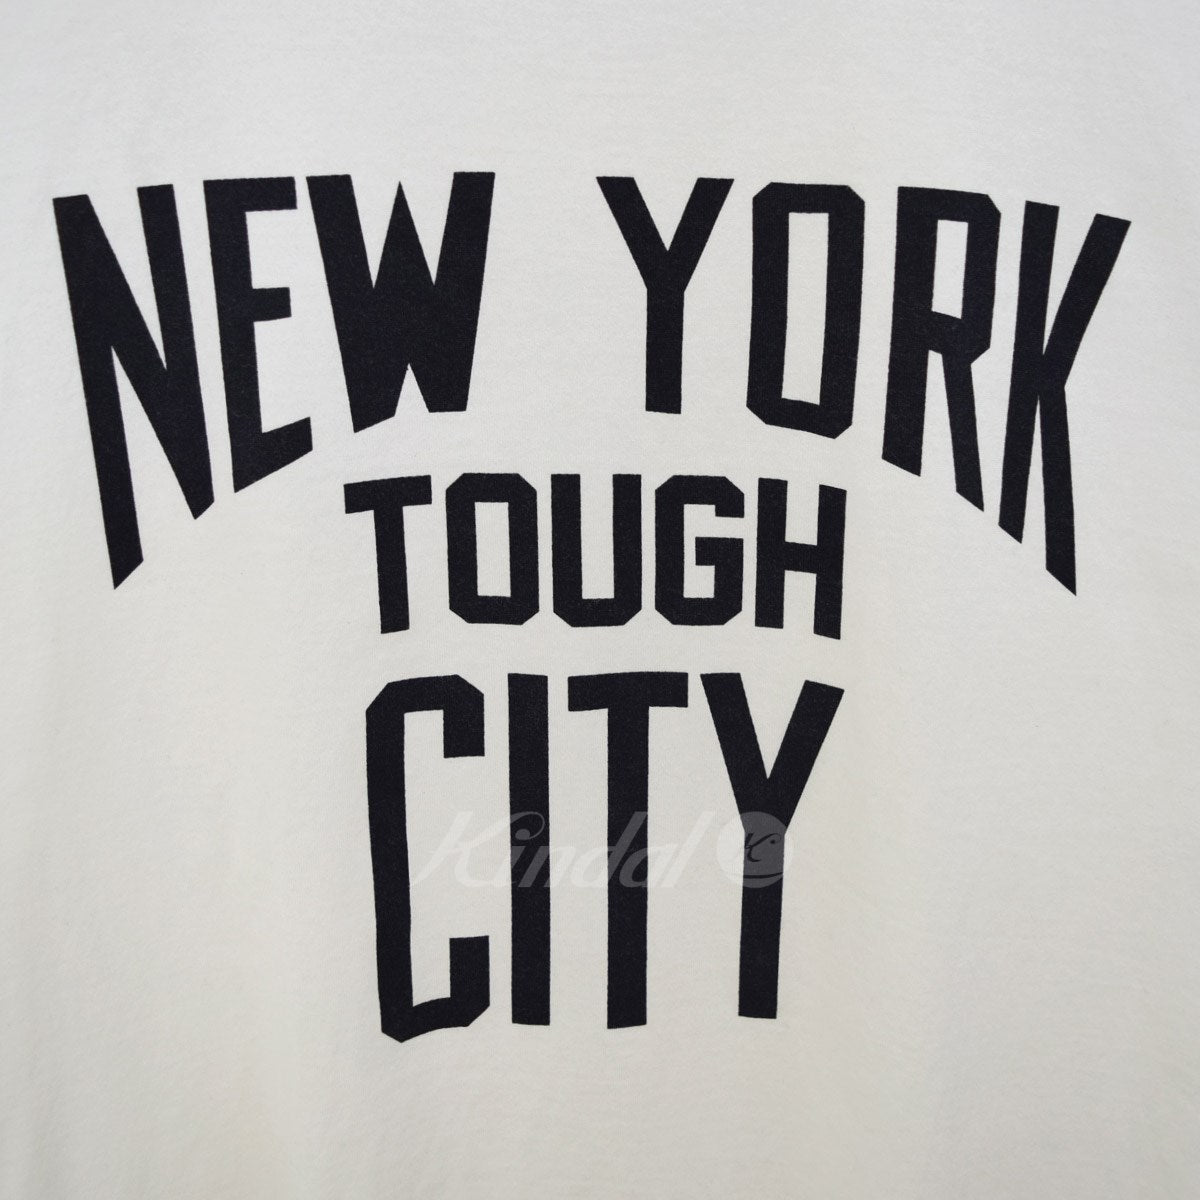 NEW YORK TOUGH CITY． プリントトリムTシャツ 2020SSsc．0100 【7月8日値下】